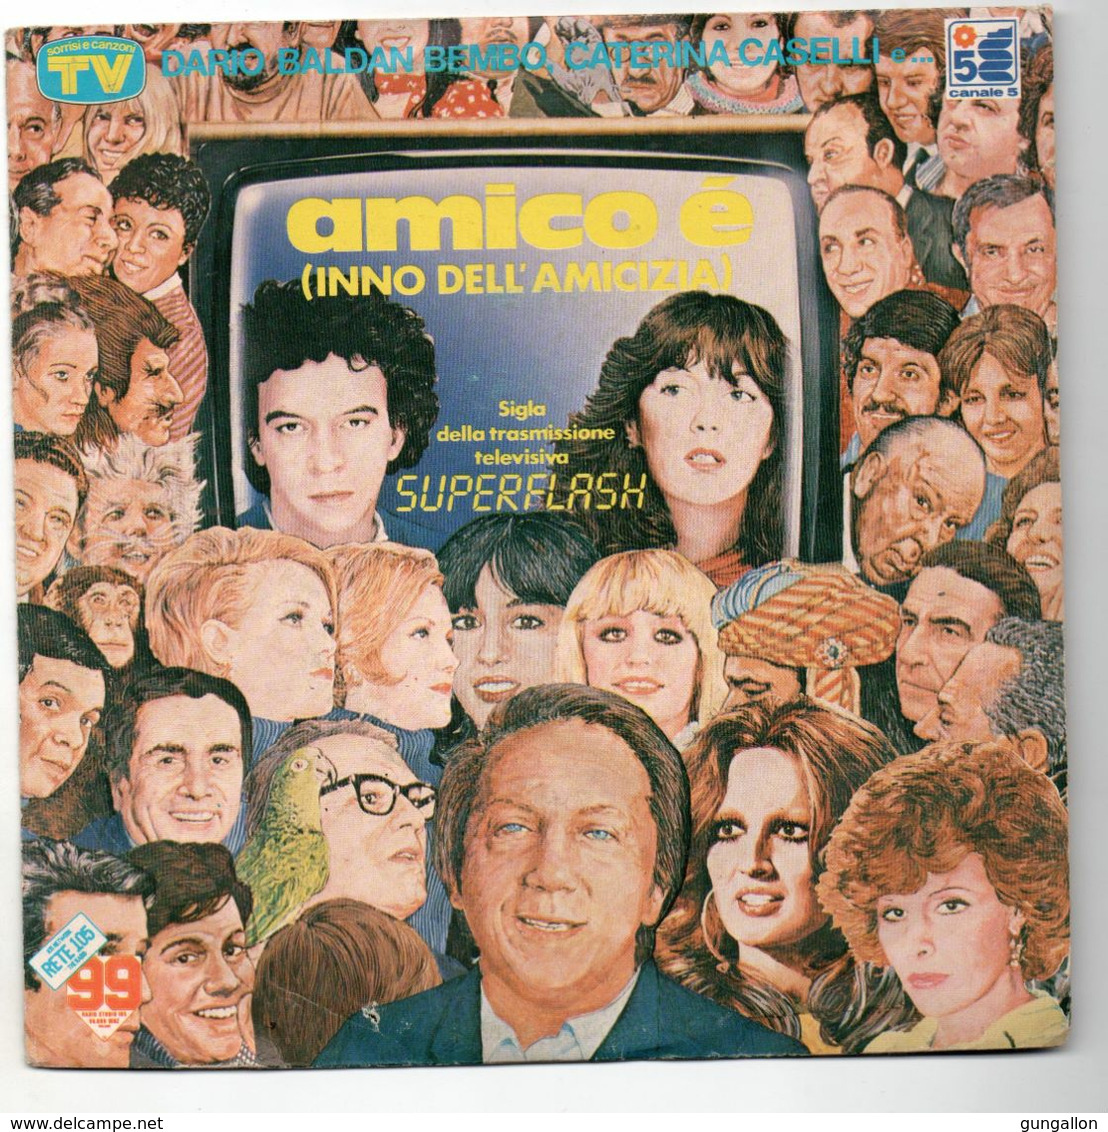 Dario Baldam Bembo/Caterina Caselli (1983)   "Amico è" - Other - Italian Music